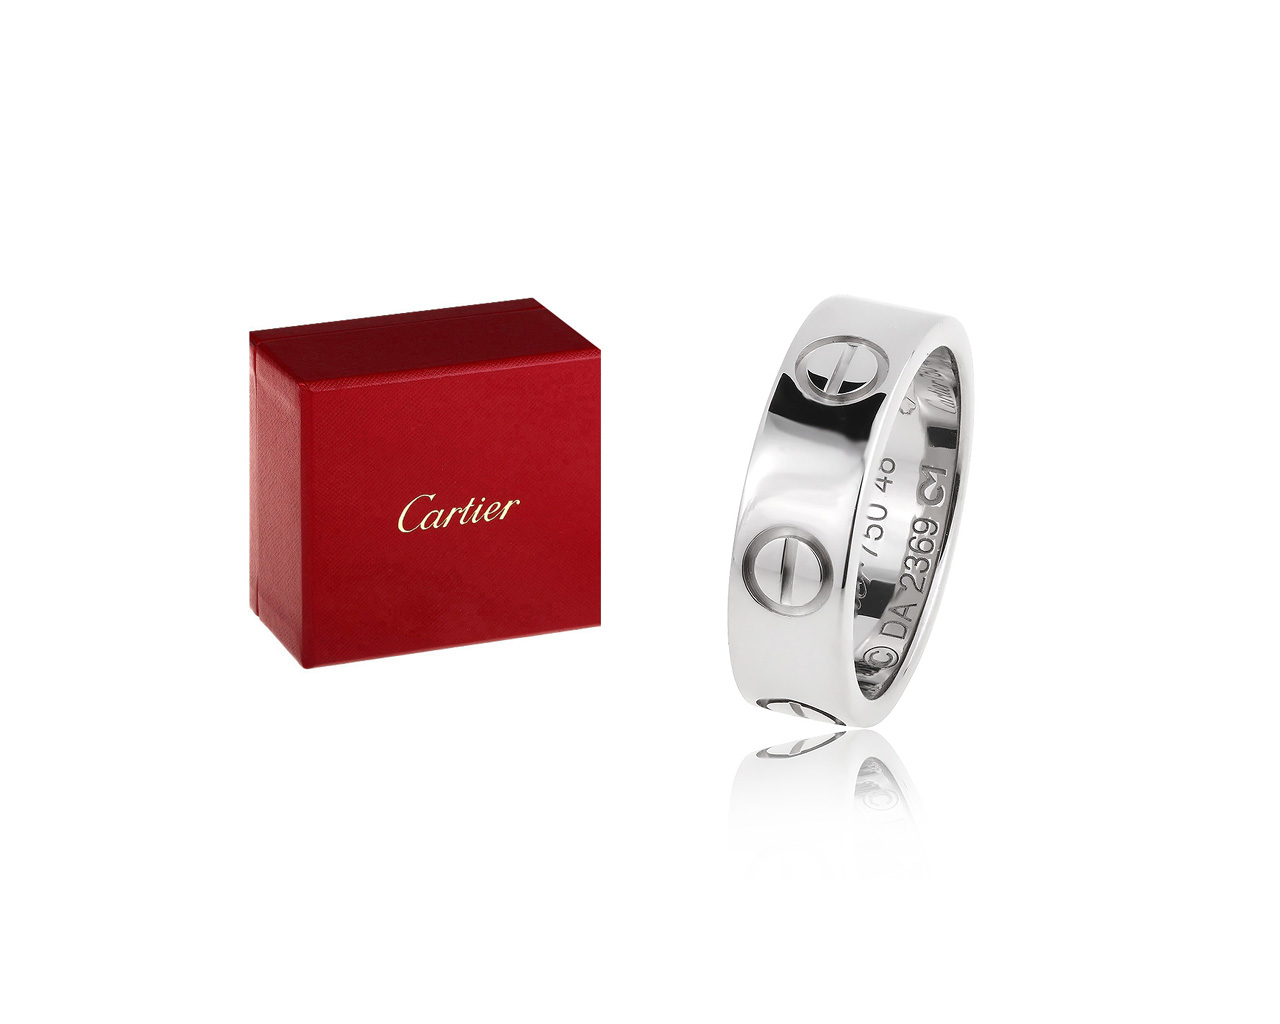 Оригинальное золотое кольцо Cartier Love